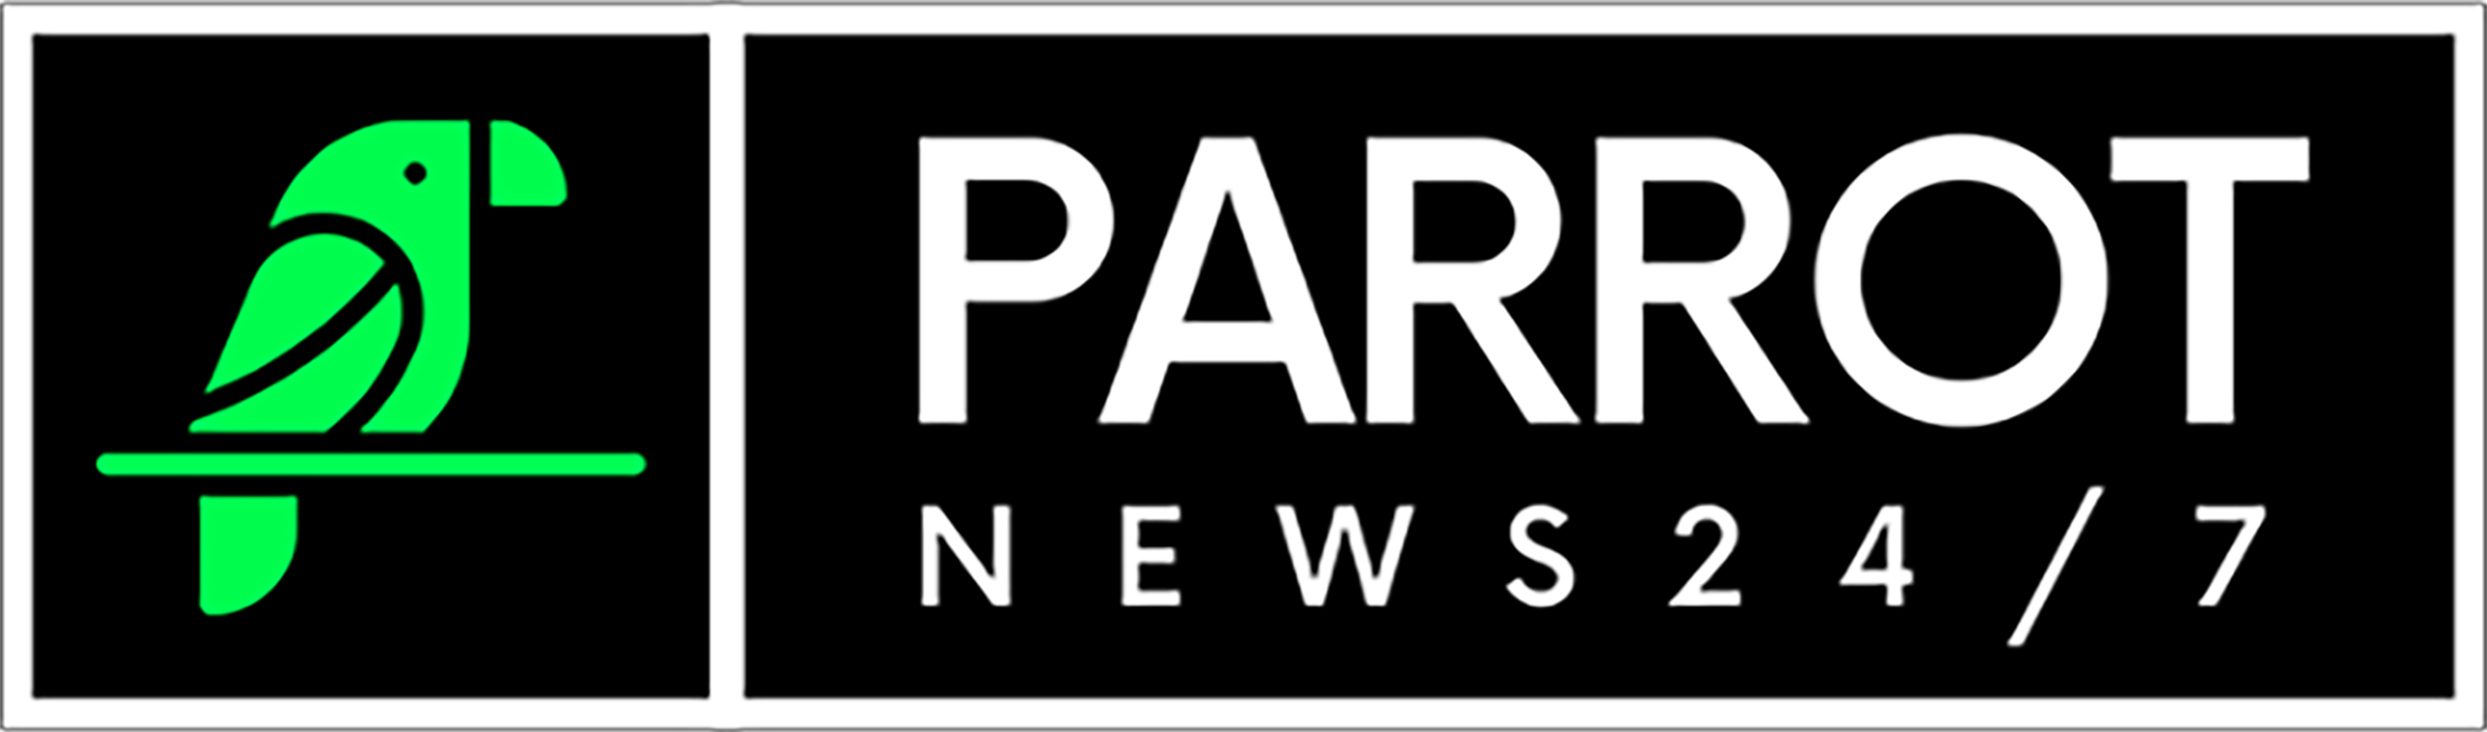 Parrot News 24/7